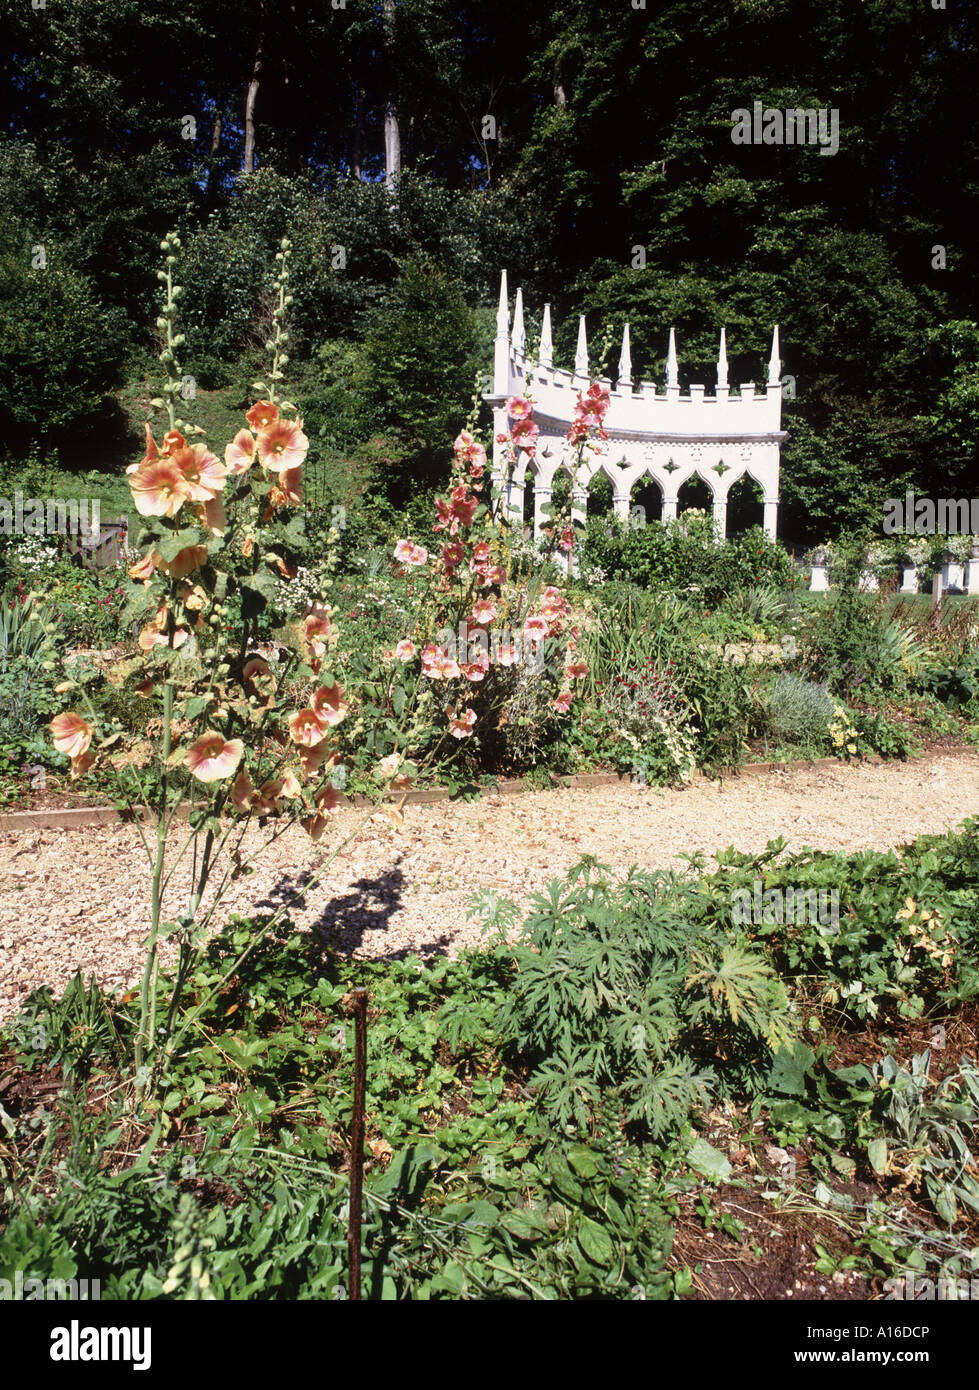 Les pittoresques jardins Rococo à Painswick dans les Cotswolds restauré à l'ancienne gloire du 18e cen par Lord Dickinson Banque D'Images